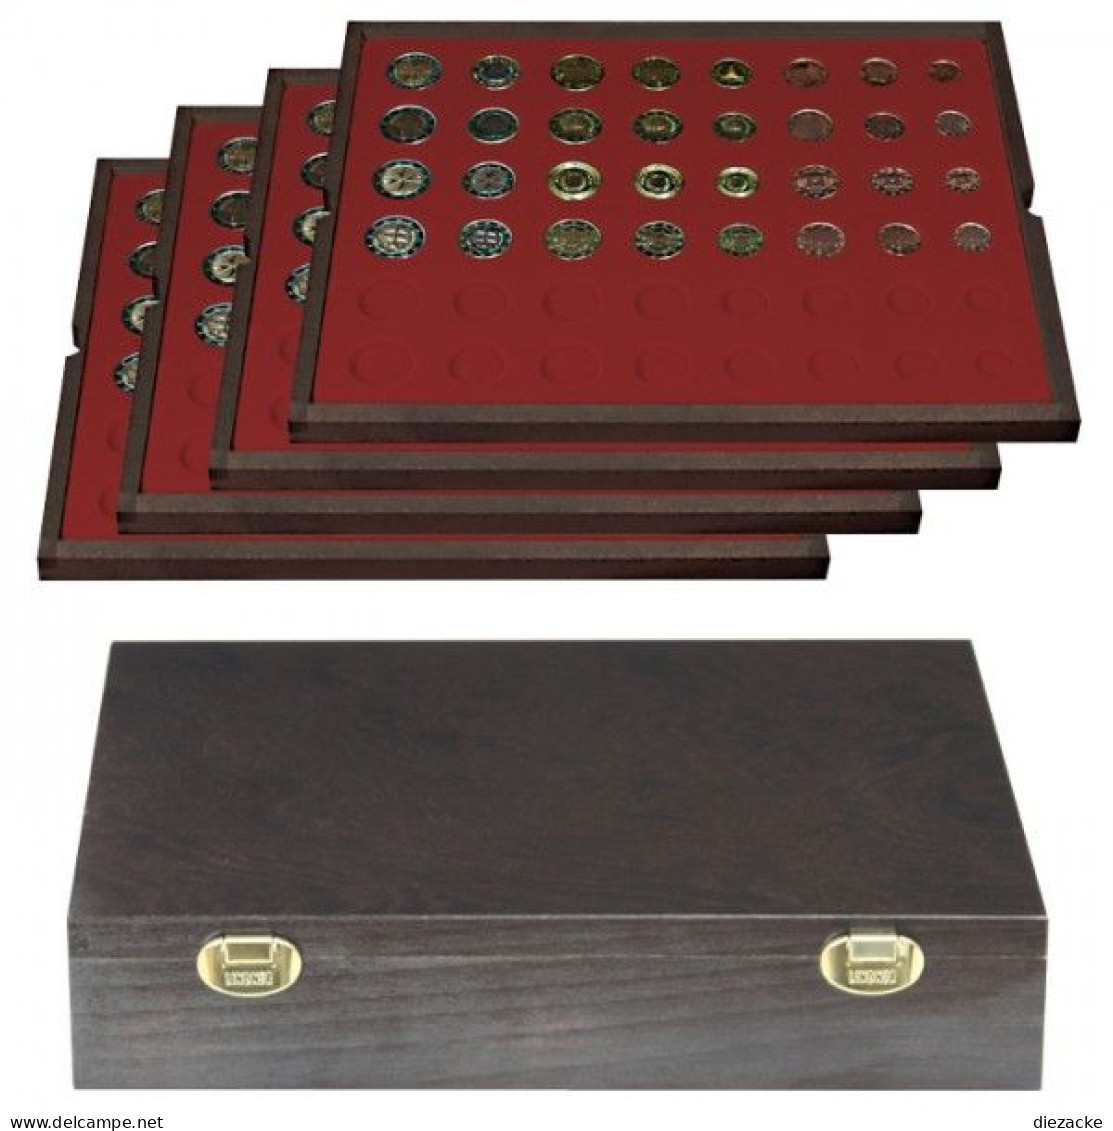 Lindner Echtholzkassette CARUS Mit 4 Tableaus Für 24 Kursmünzensätze 2494-12 Neu - Supplies And Equipment